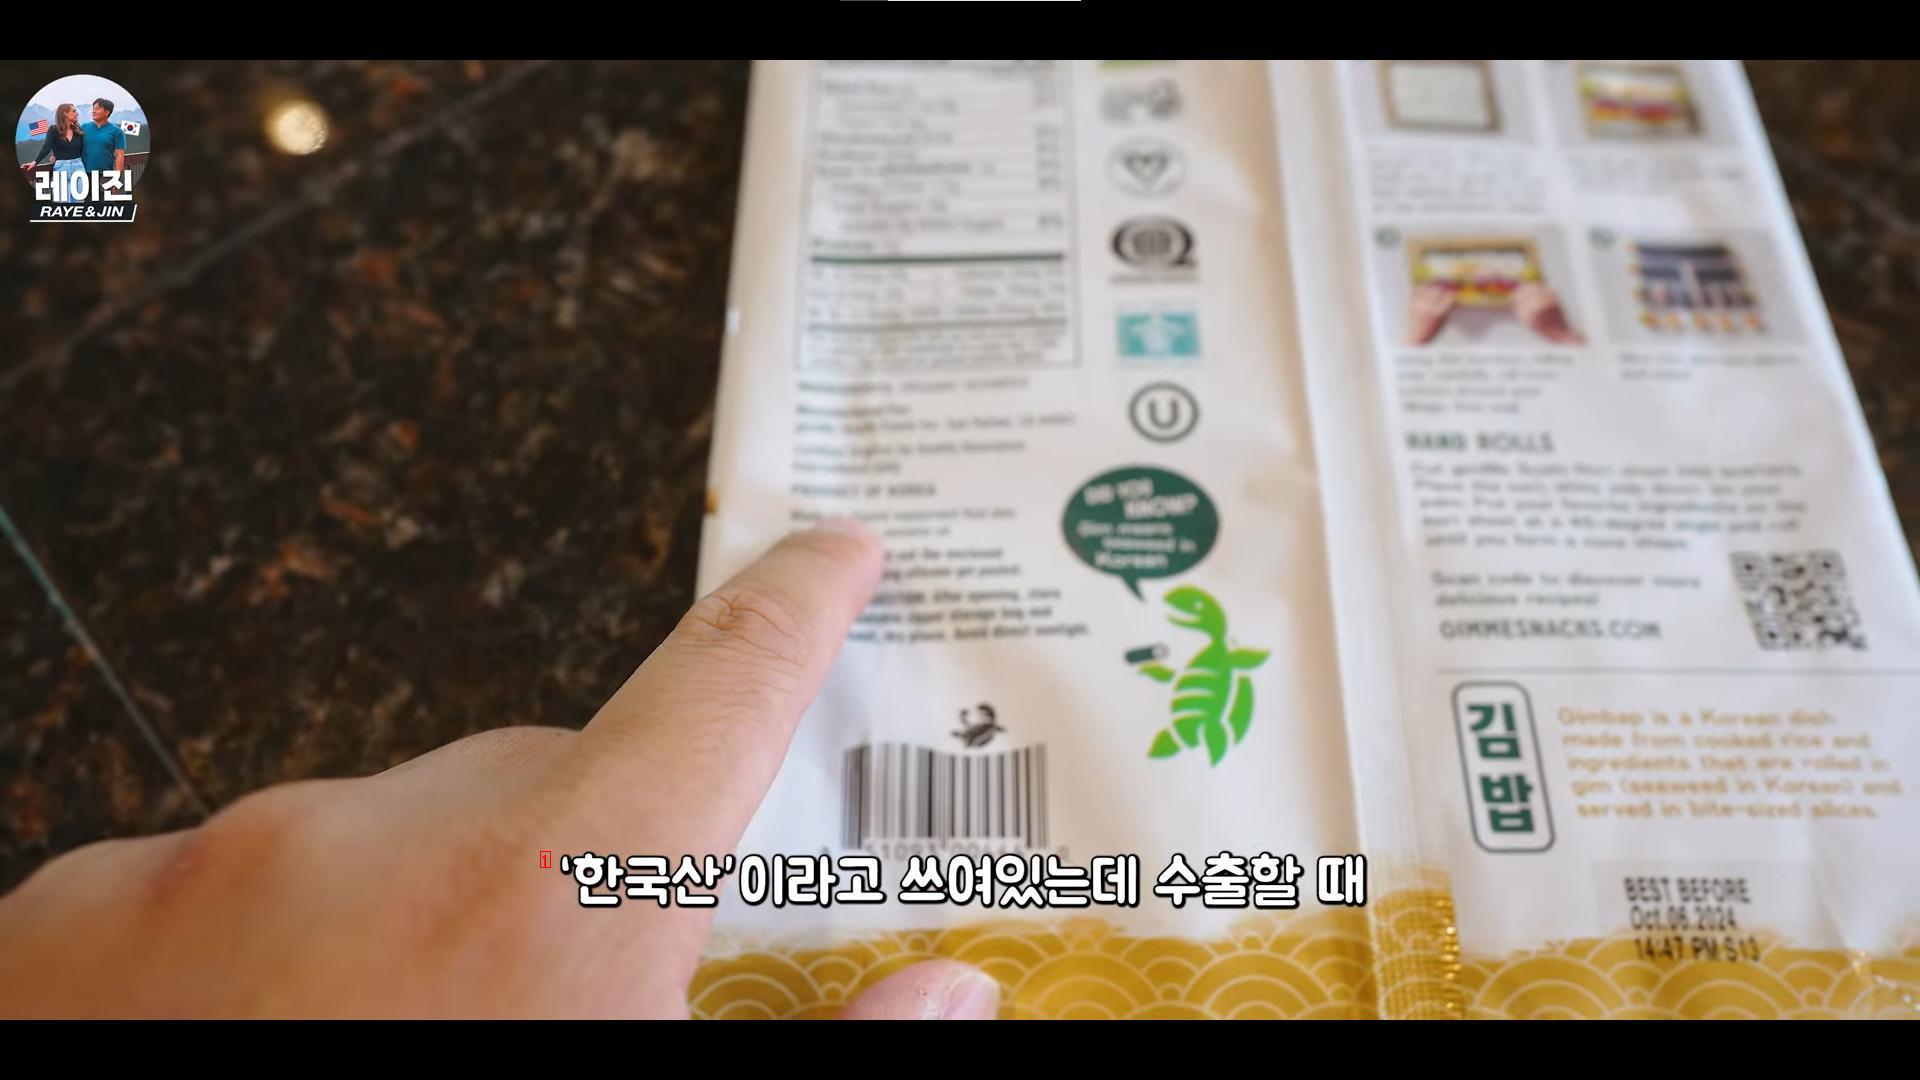 のり巻き用海苔を寿司ノリとして米国に輸出する韓国メーカー